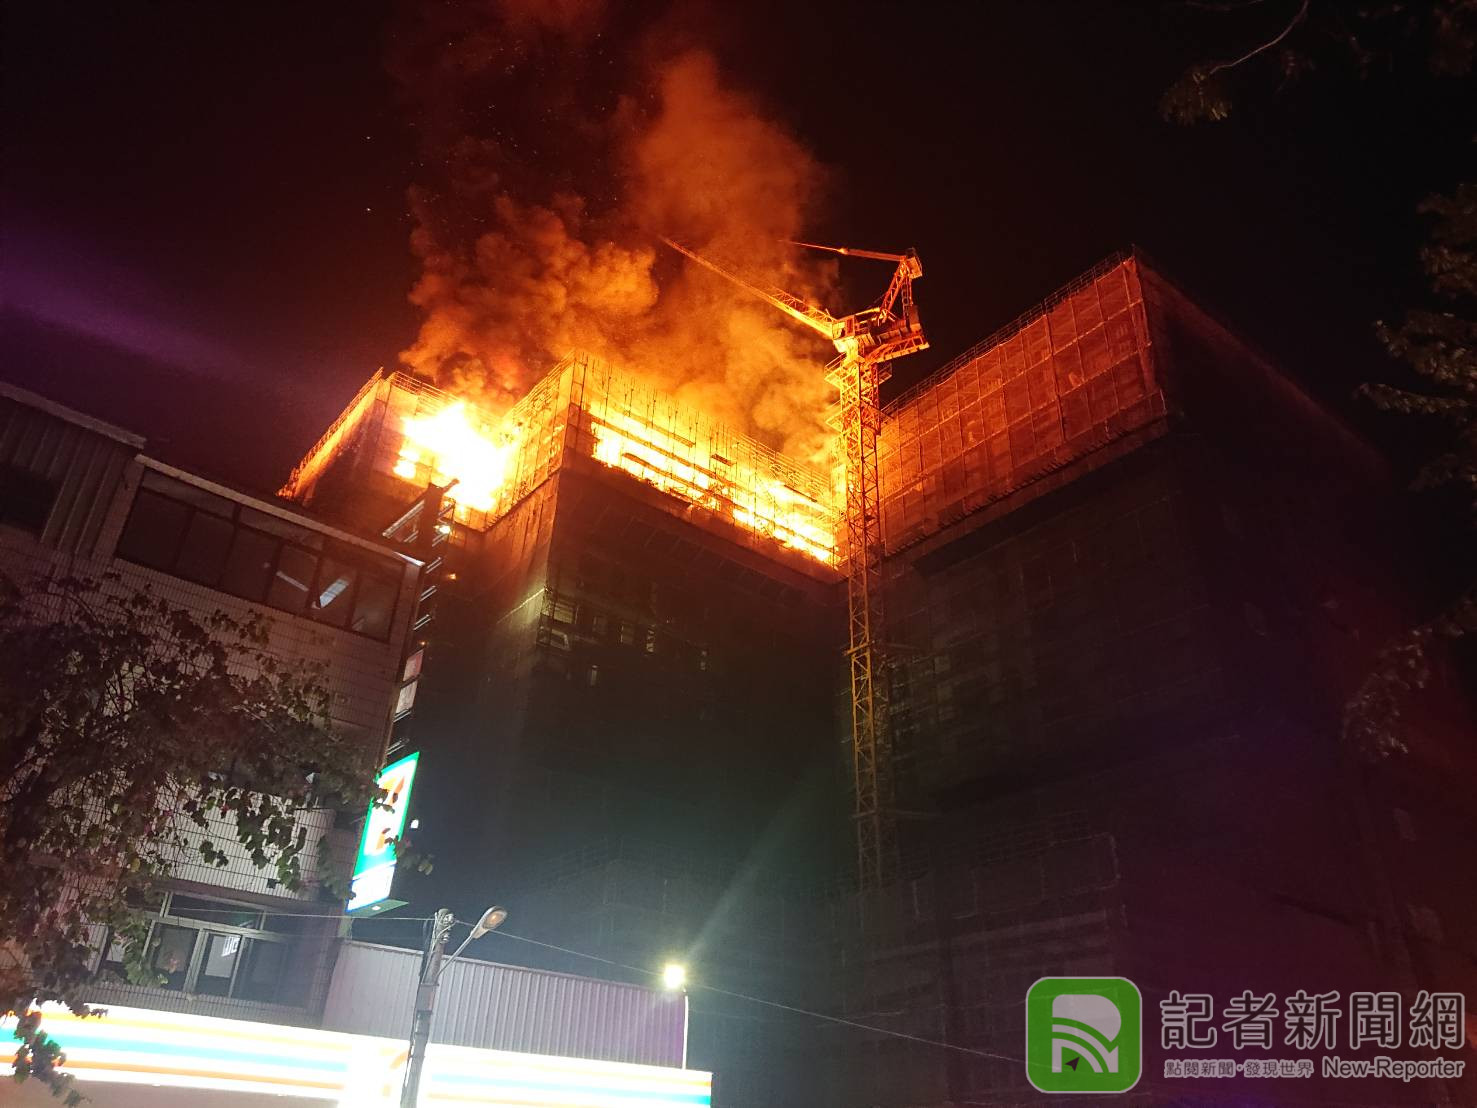 台中市半夜大樓火警 幸無人受傷